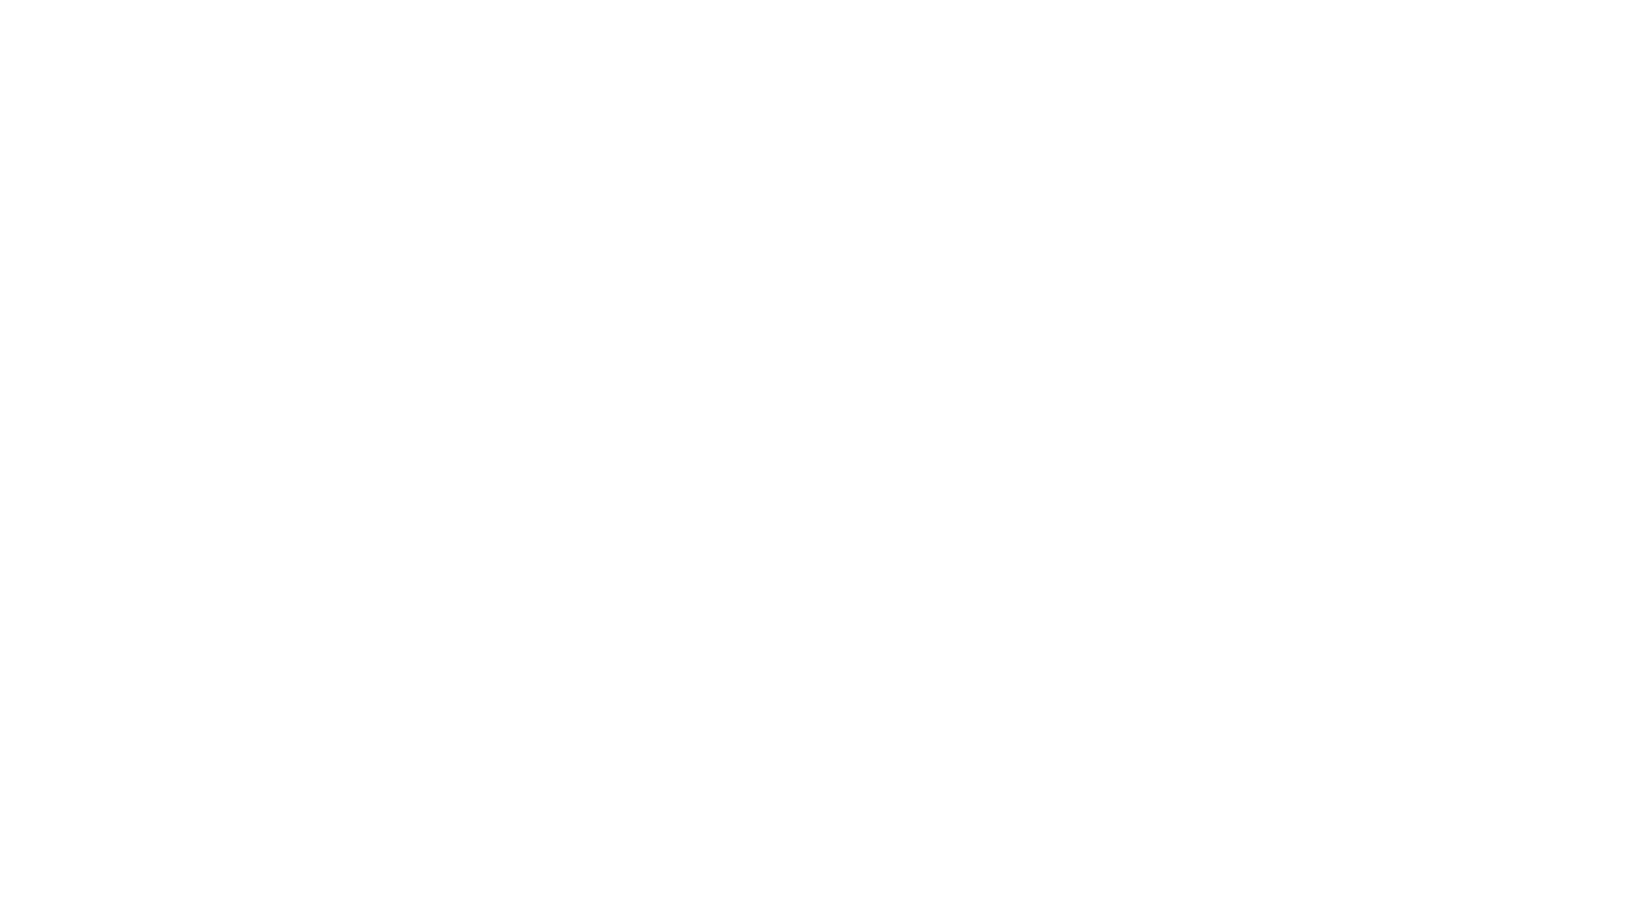 CoutureToYourDoor